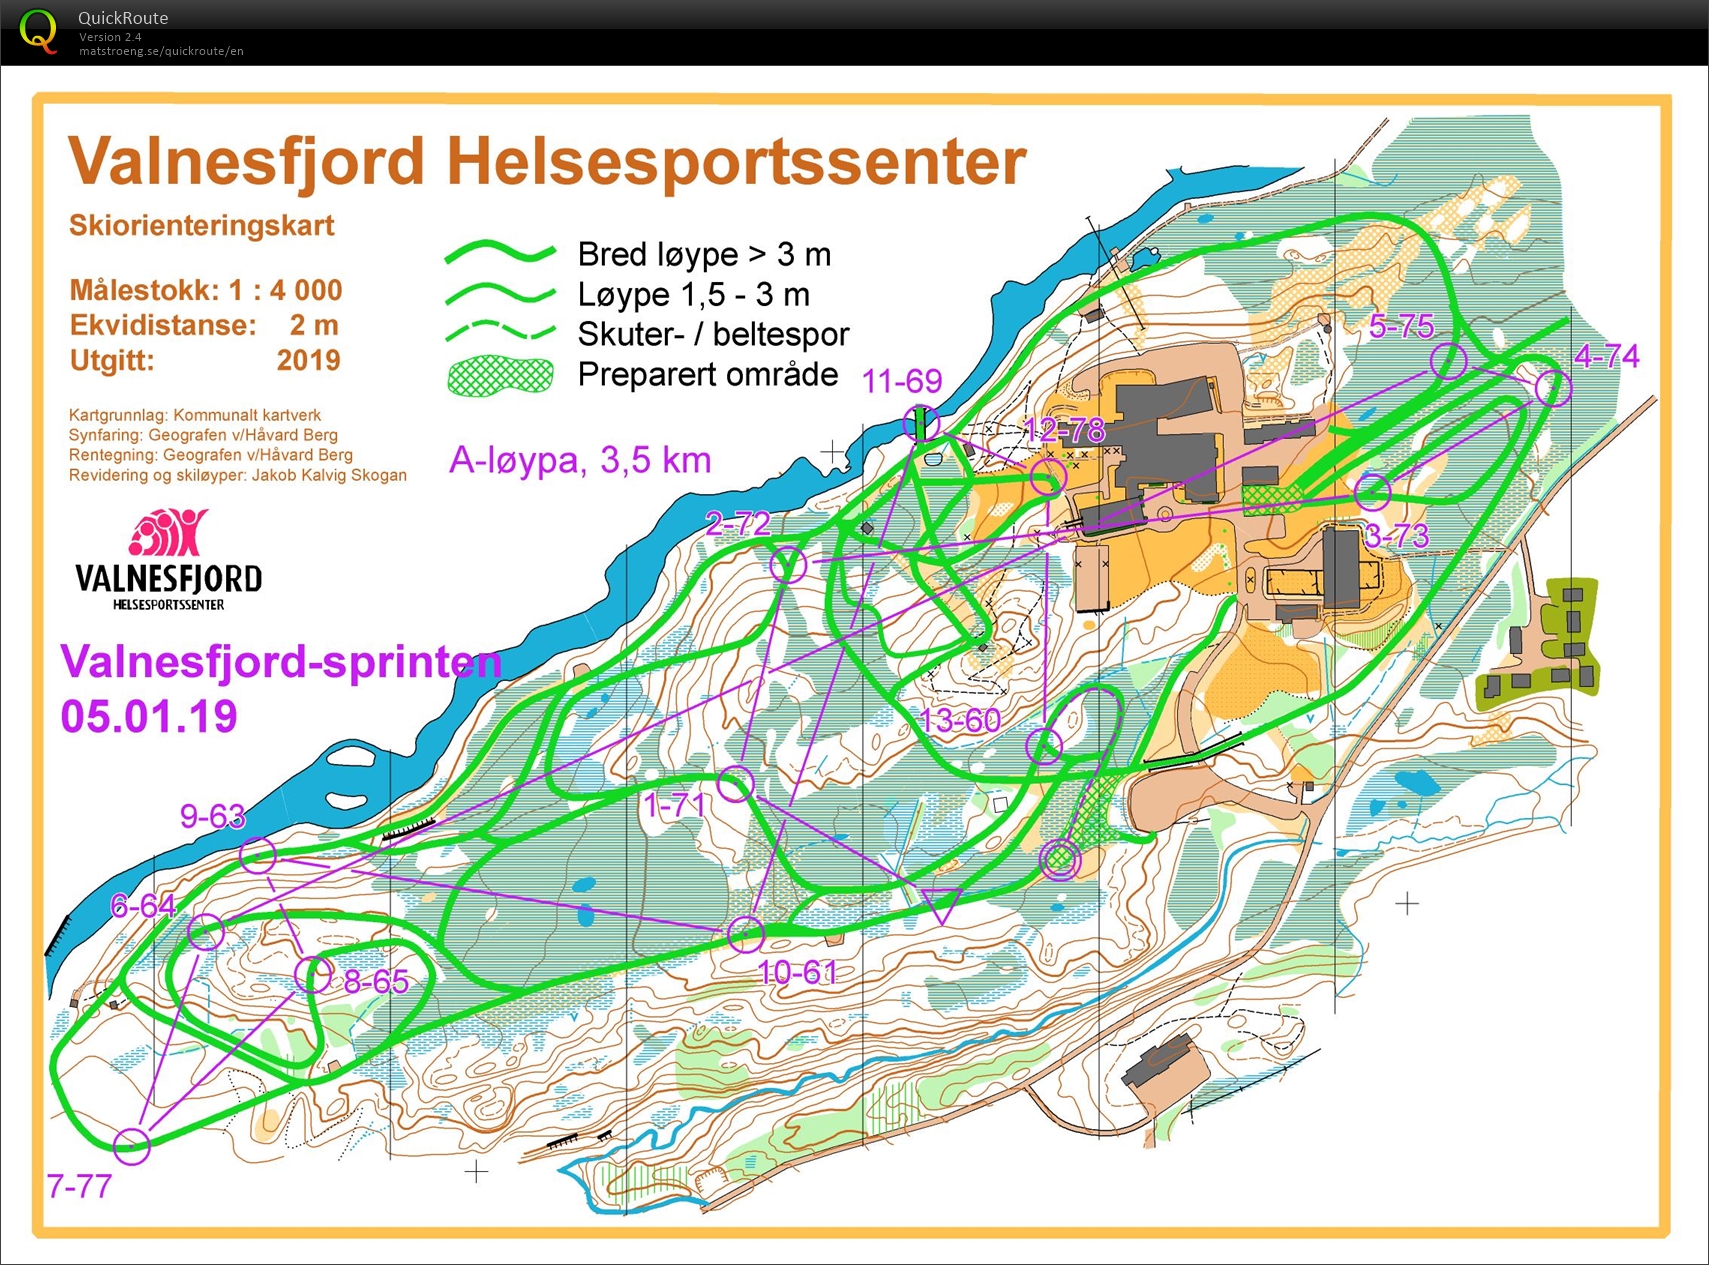 Valnesfjordsprinten Skiorientering (05.01.2020)